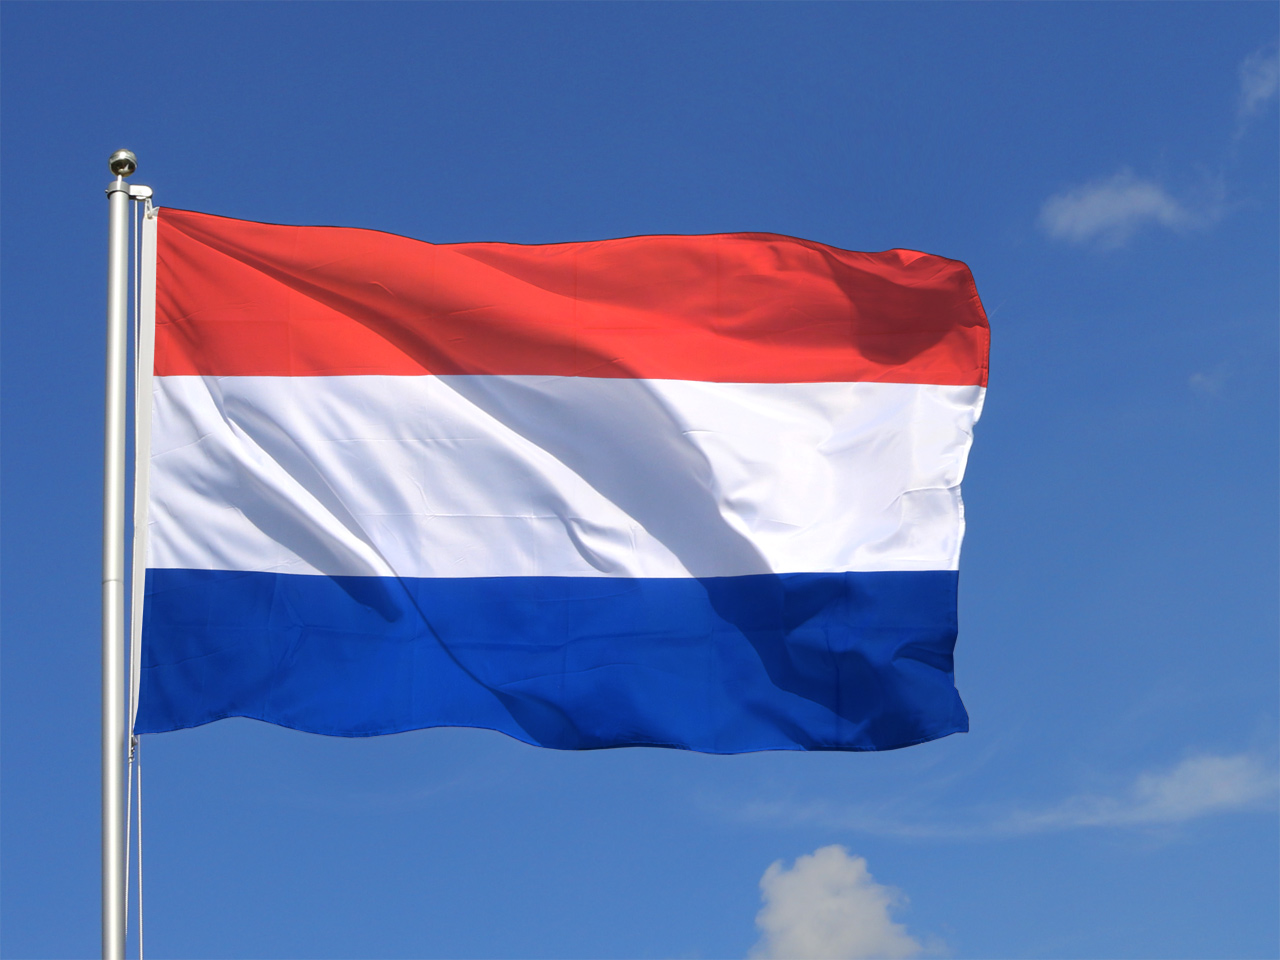 Drapeaux Chaîne Drapeaux Chaîne Guirlande Pays-Bas Ville d'Amsterdam drapeaux drapeaux 15x